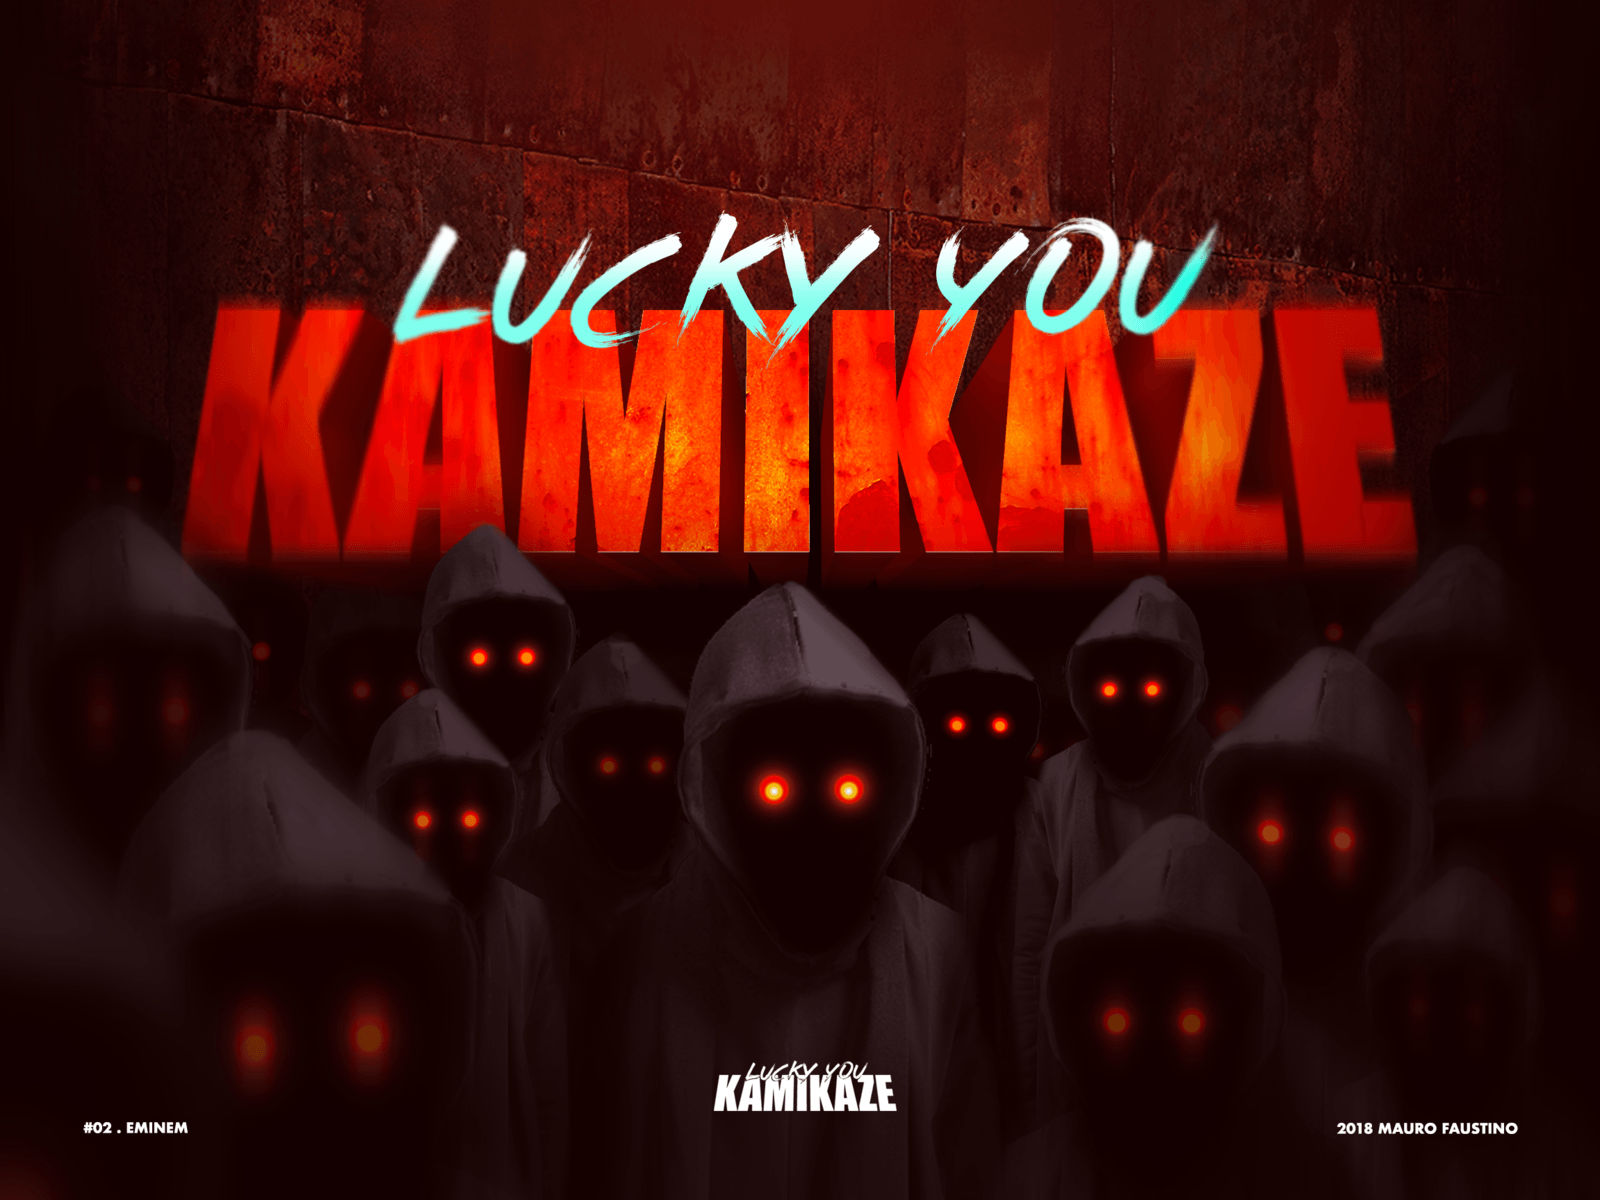 Kamikaze You